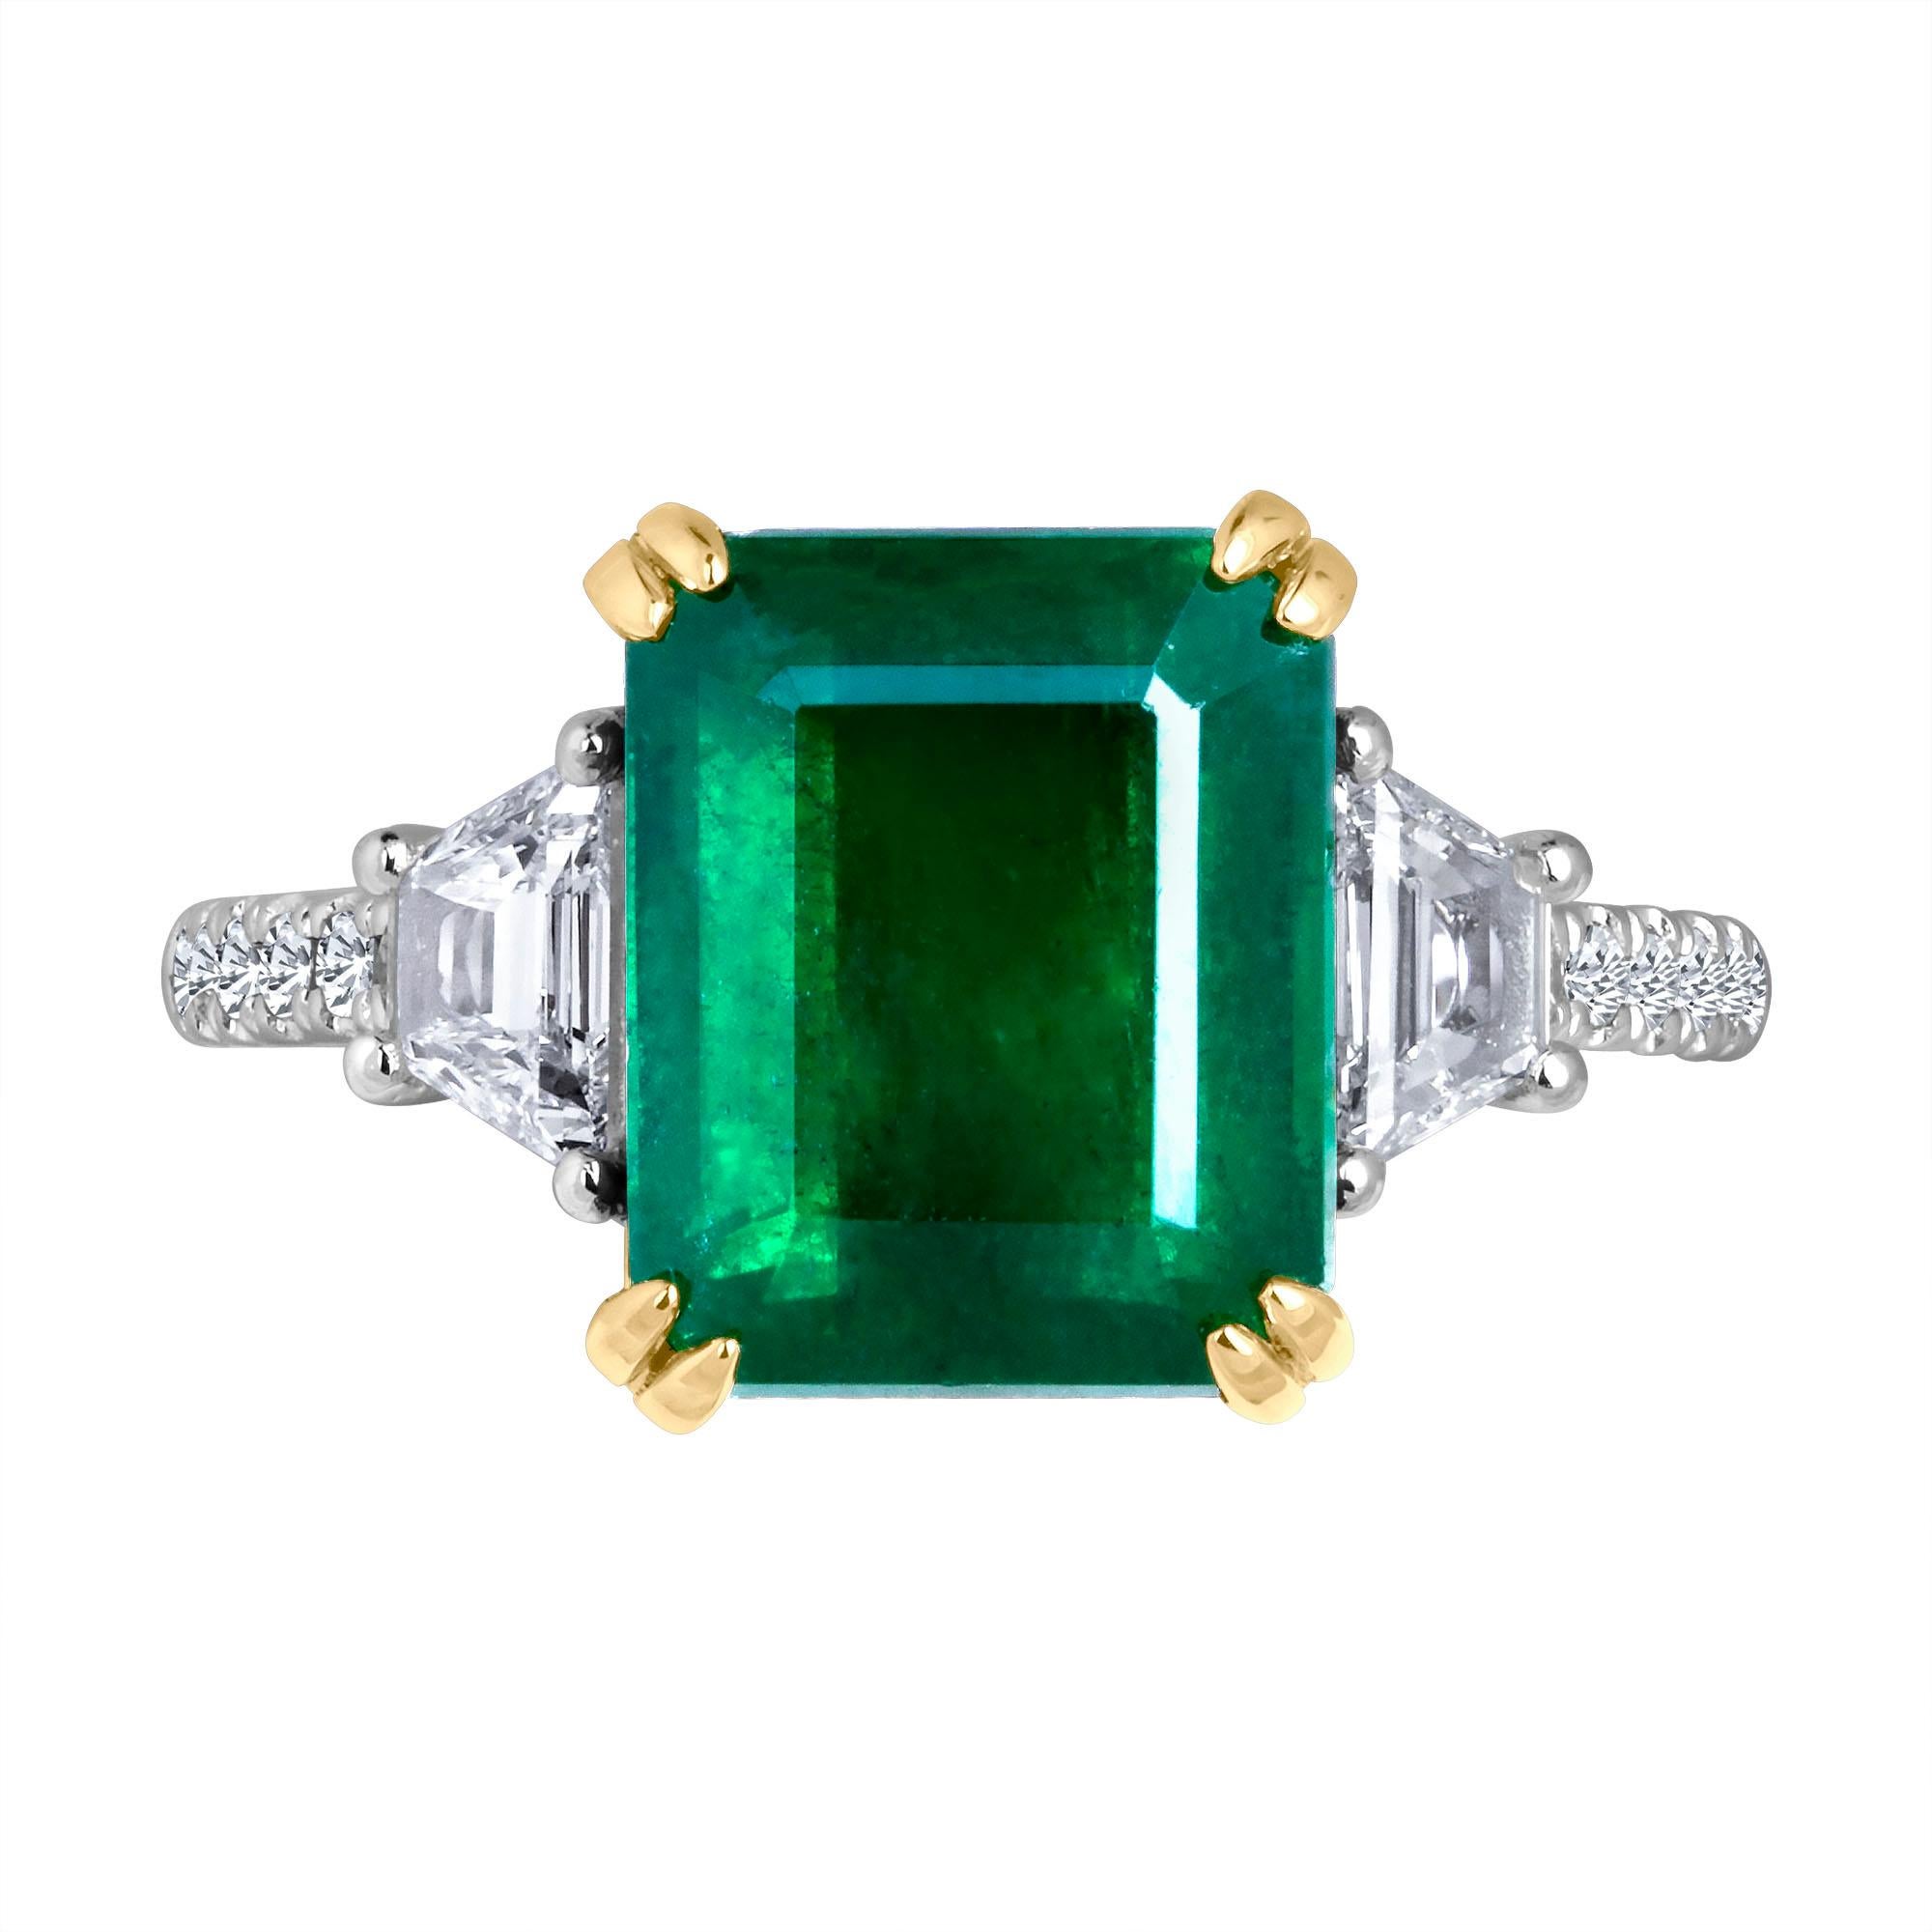 Emilio Jewelry Certified 6.05 Carat Genuine Emerald Diamond Platinum Ring